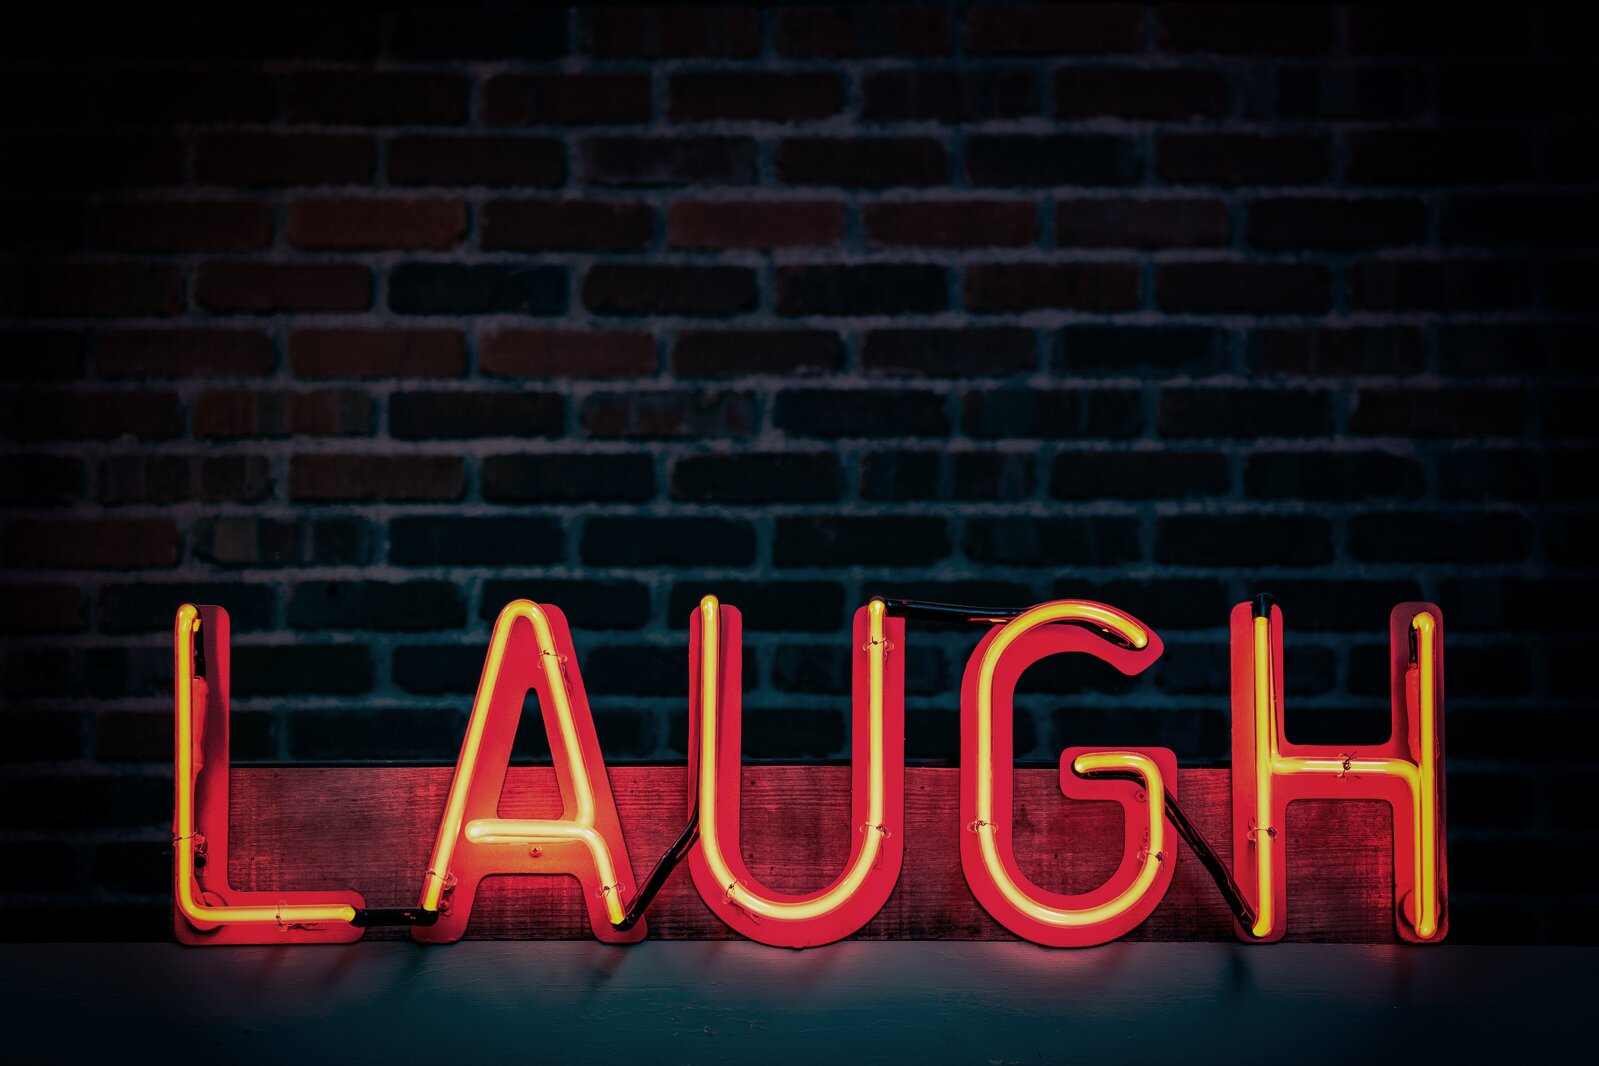 laugh sign